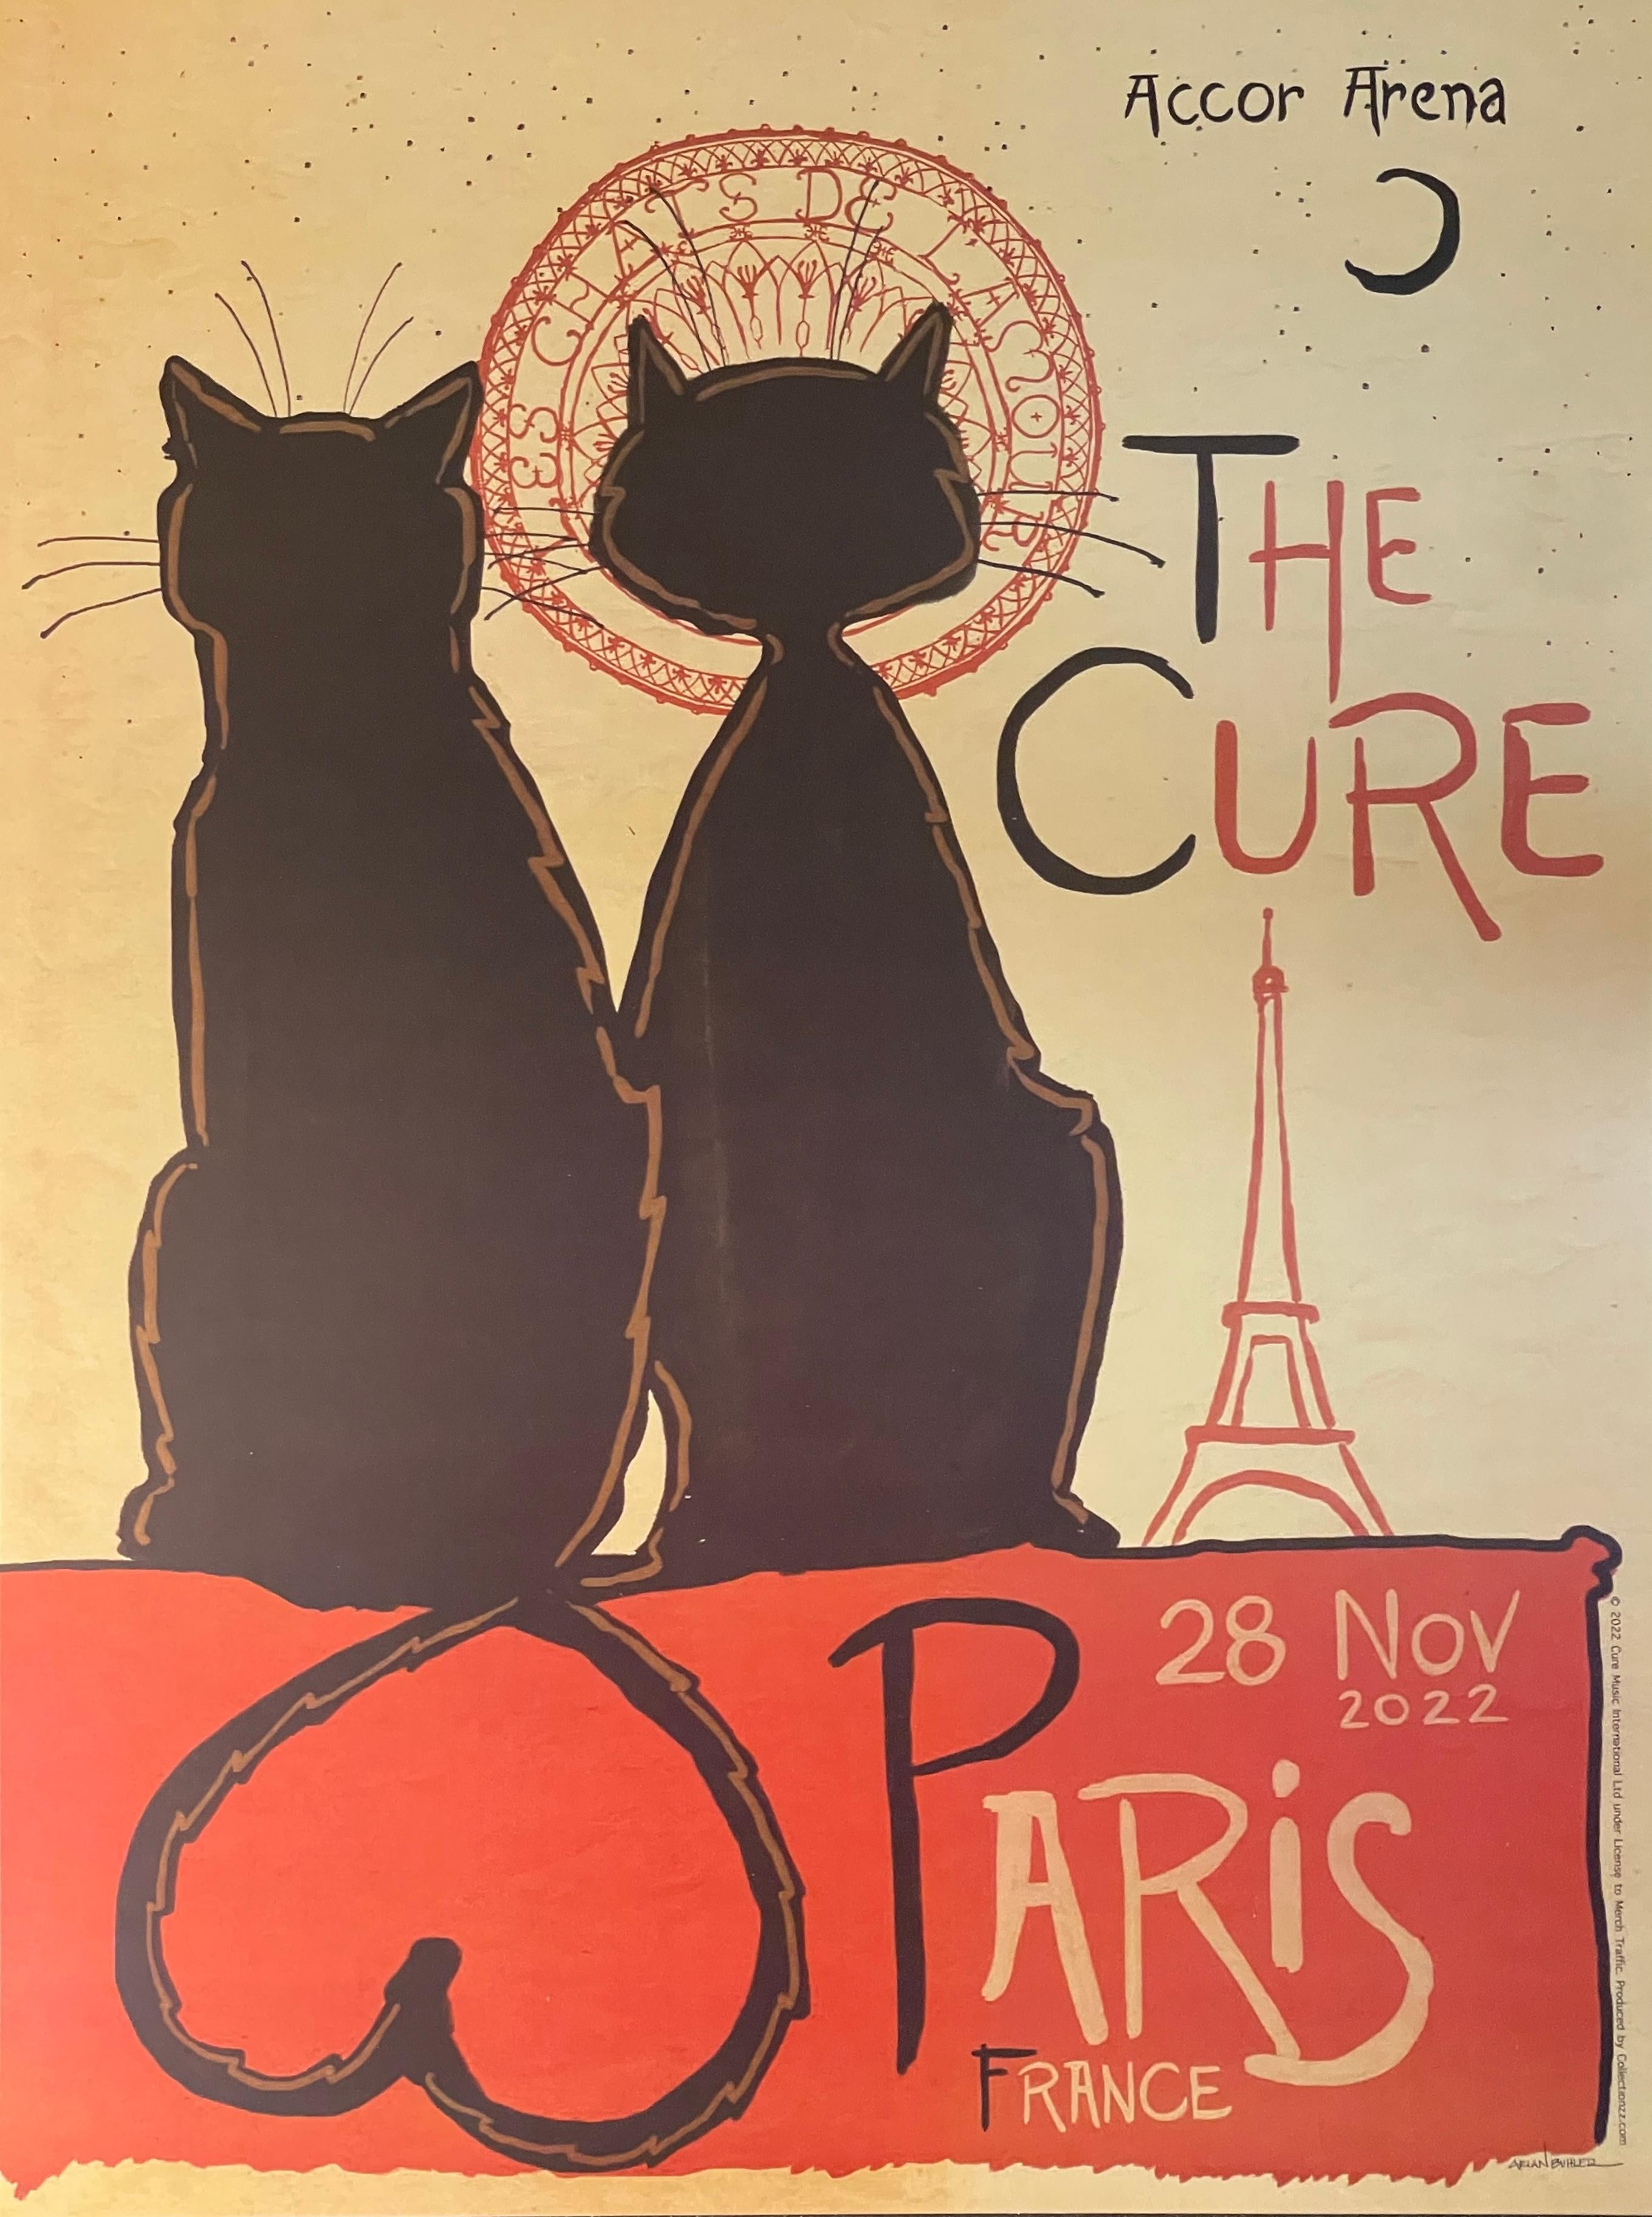 Arian Buhler "The Cure" Tour Print Paris Love Contemporary Concert Art 